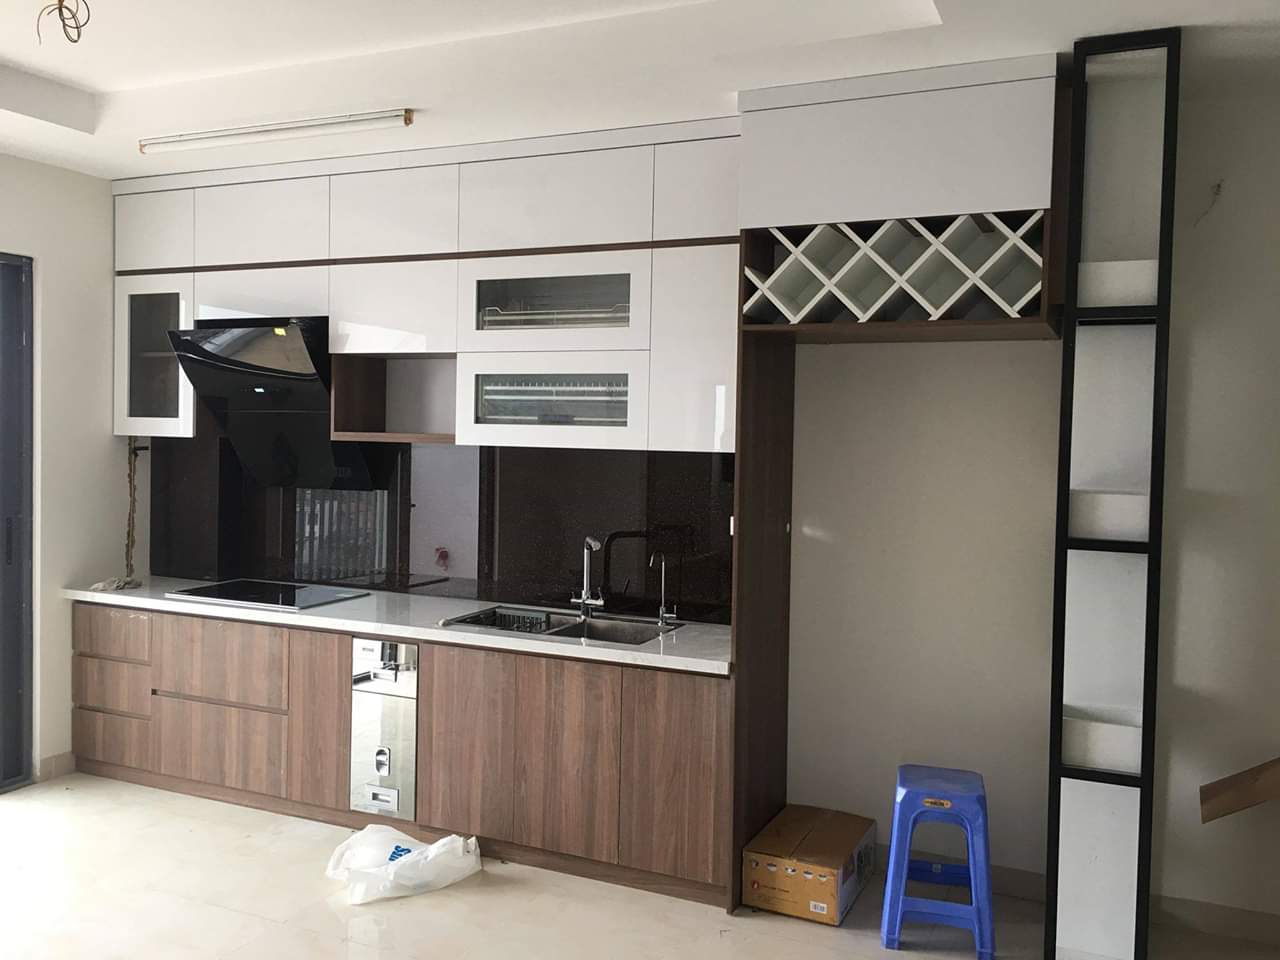 Tủ bếp Acrylic màu trắng kết hợp màu vân gỗ hiện đại - ACADO thi công tủ bếp cho khách hàng tại Hà Nội